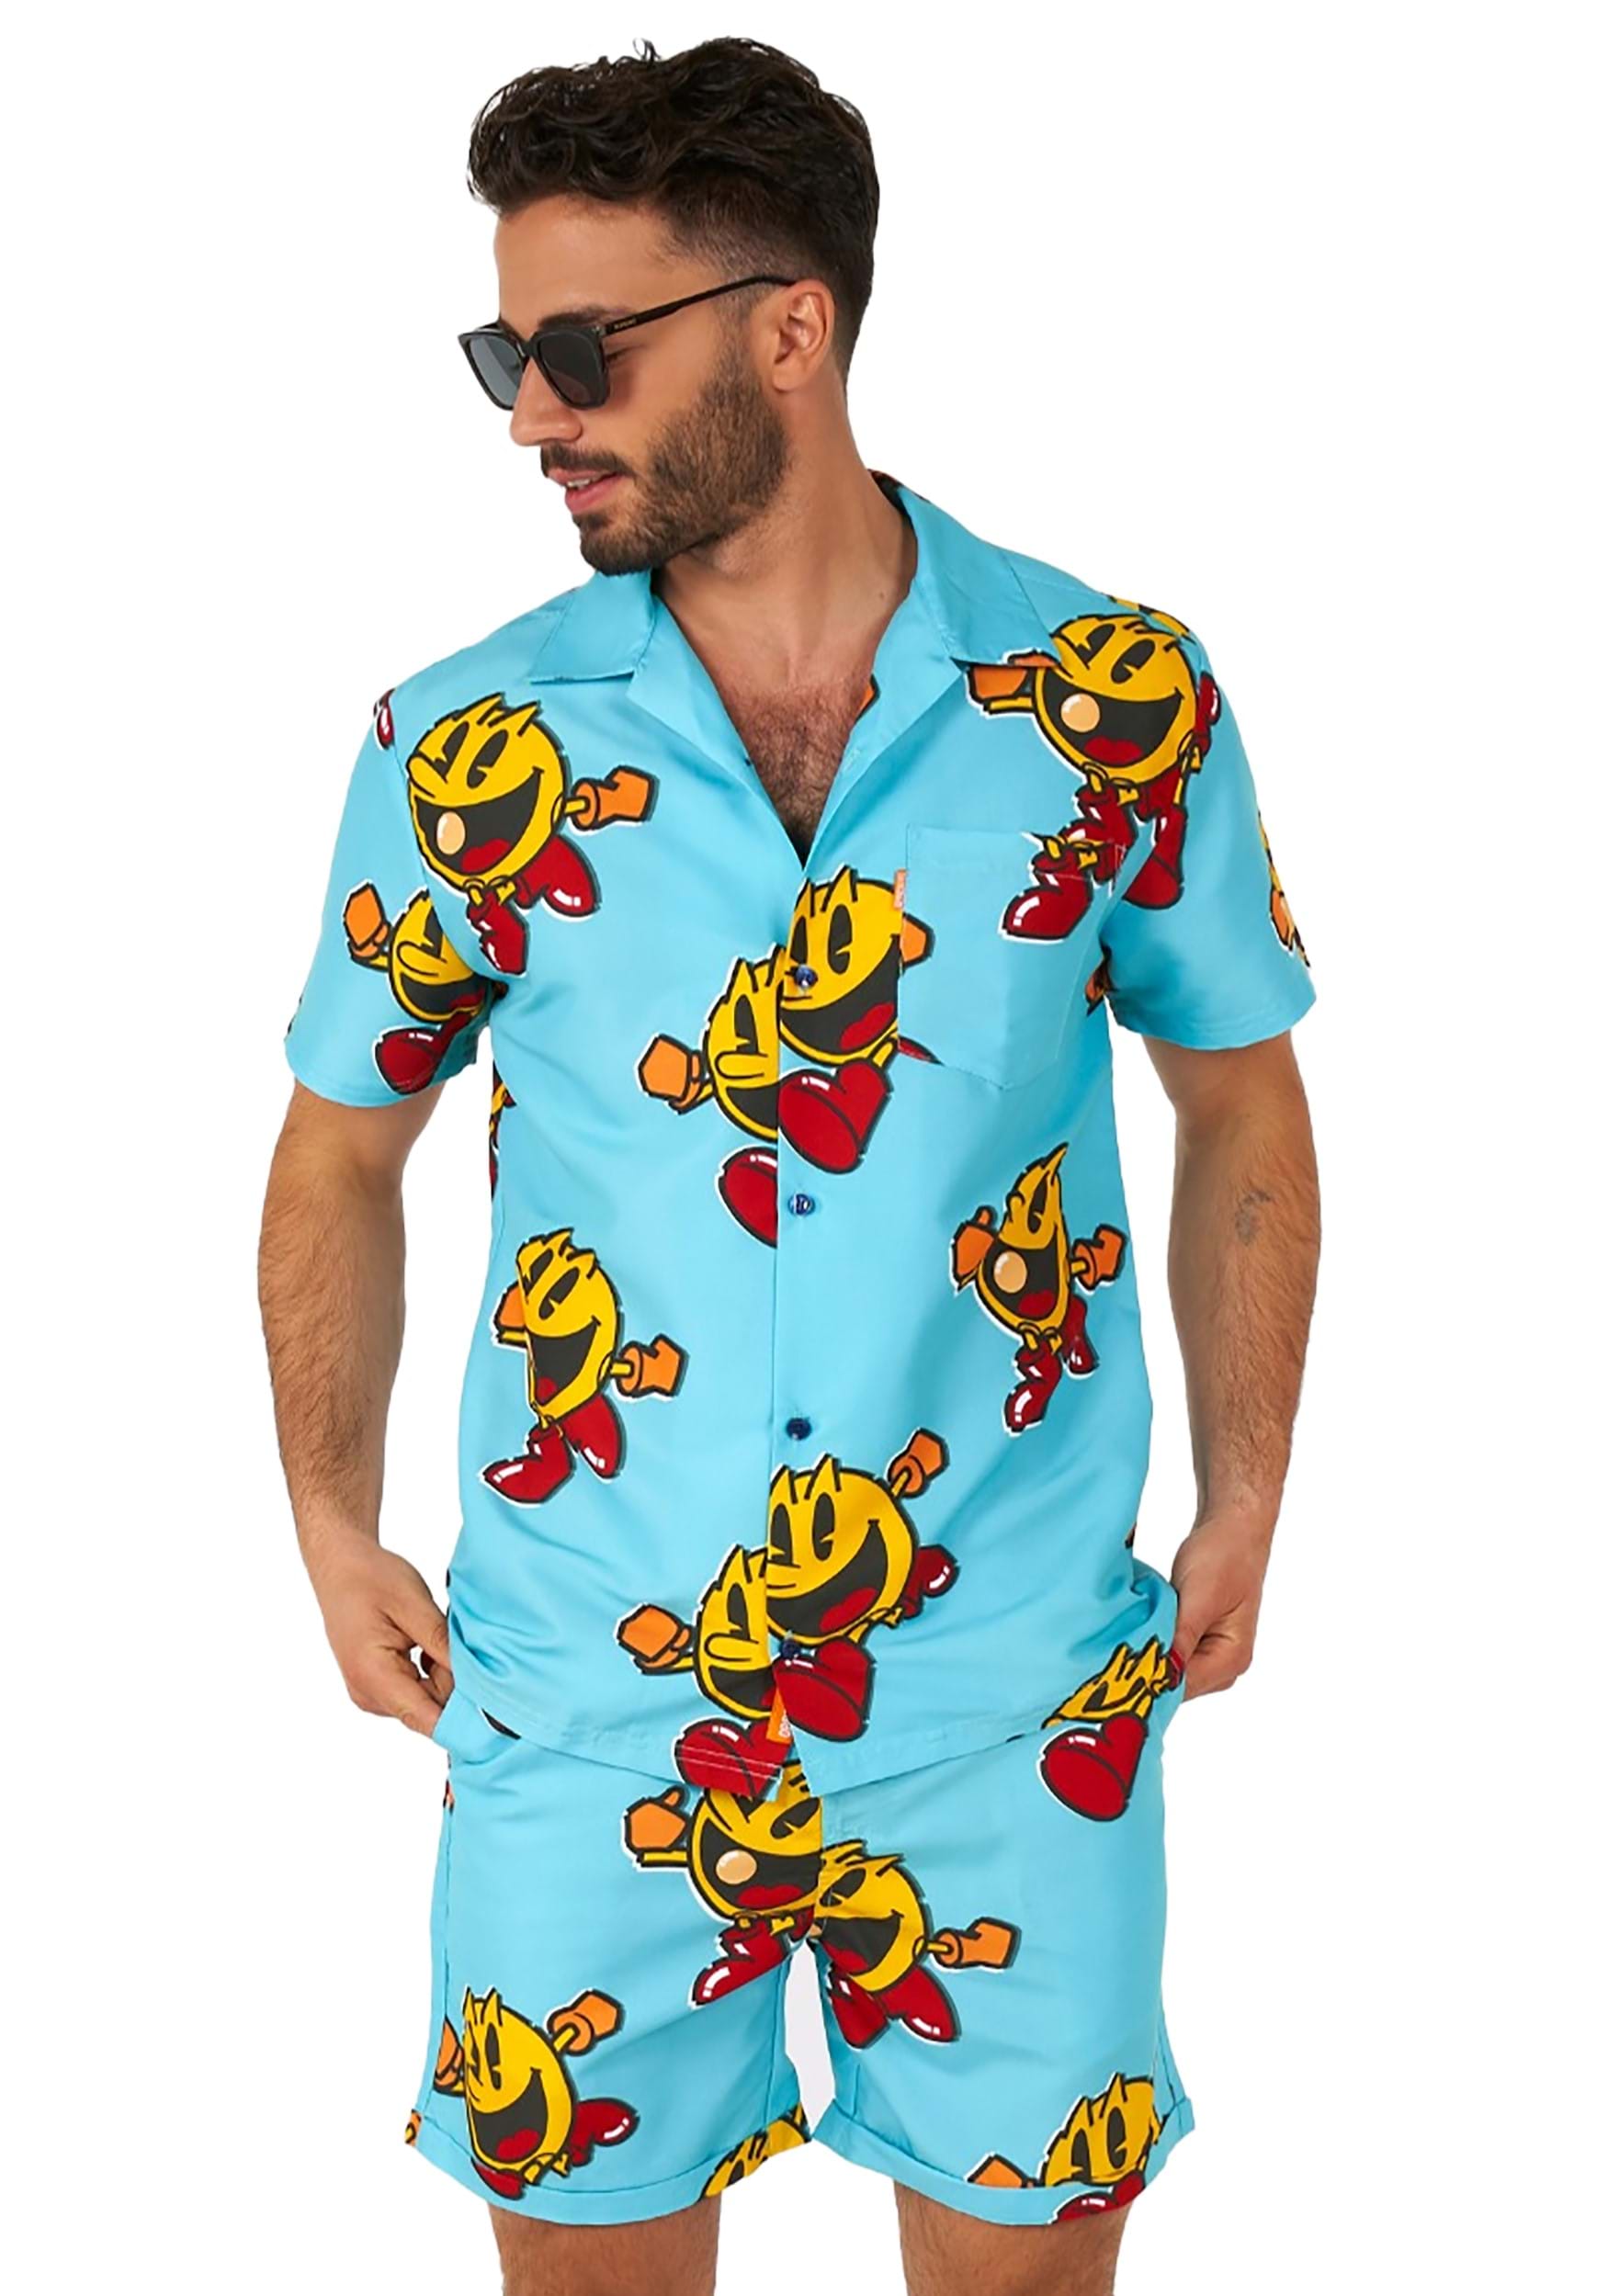 Pac-man Waka Waka traje de baño y camisa para hombres Multicolor Colombia